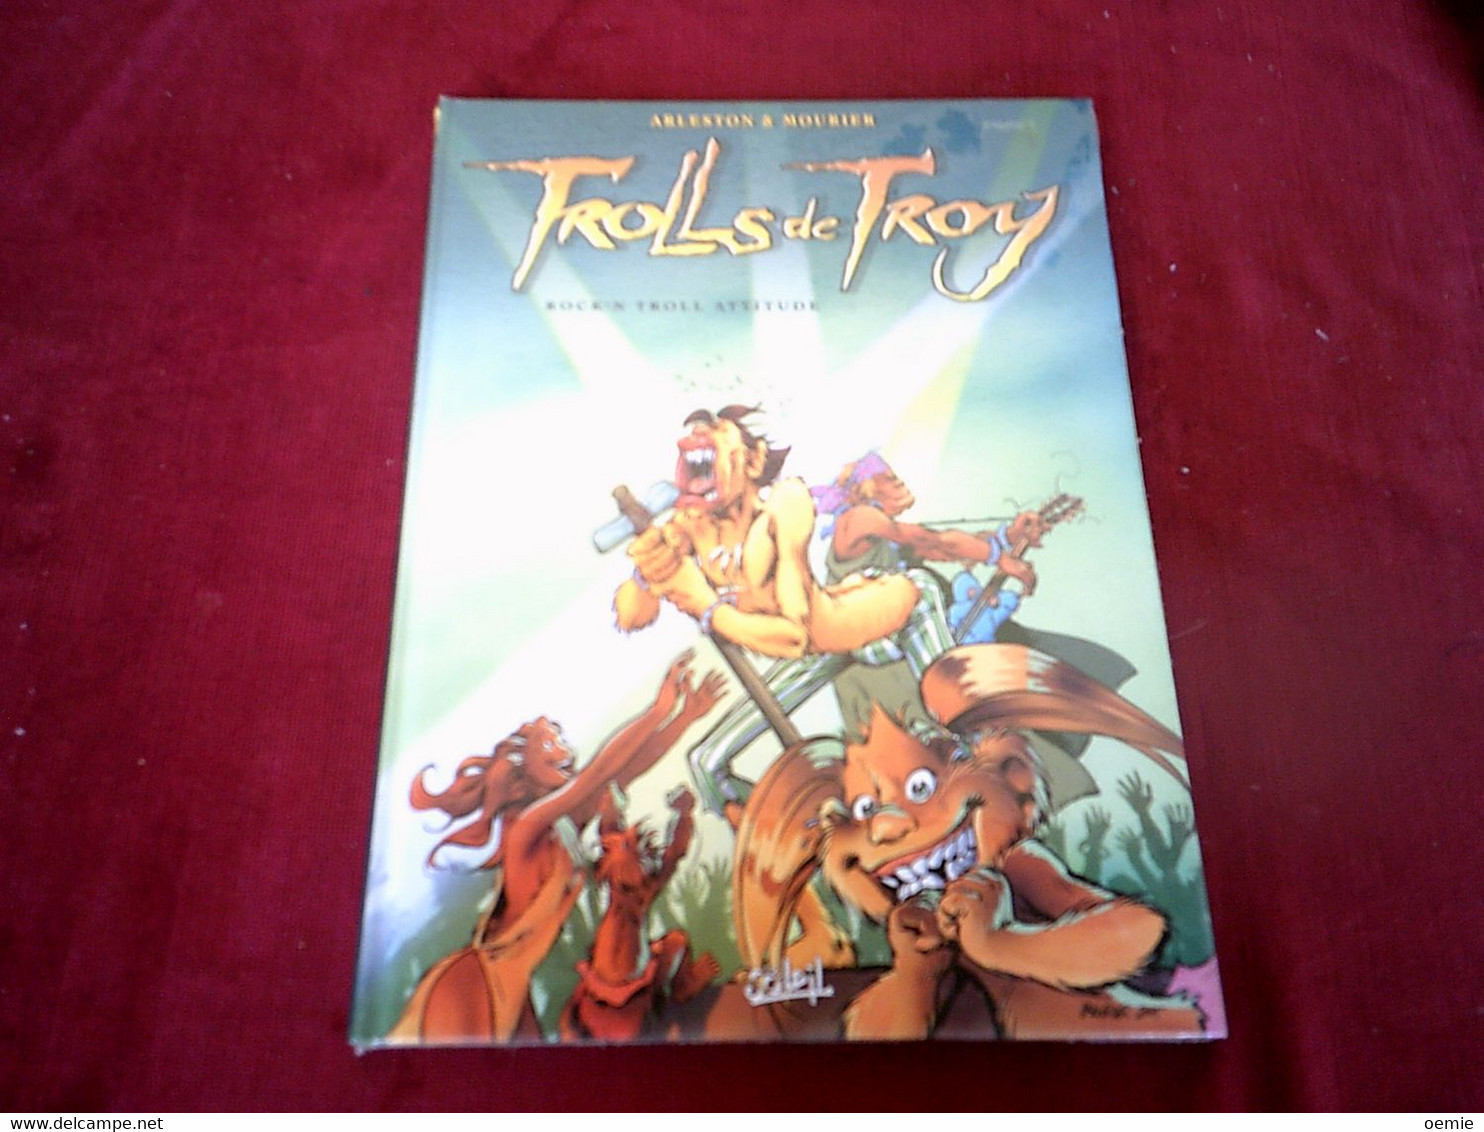 TROLLS DE TROY   ROCK 'N TROLL ATTITUDE - Colecciones Completas